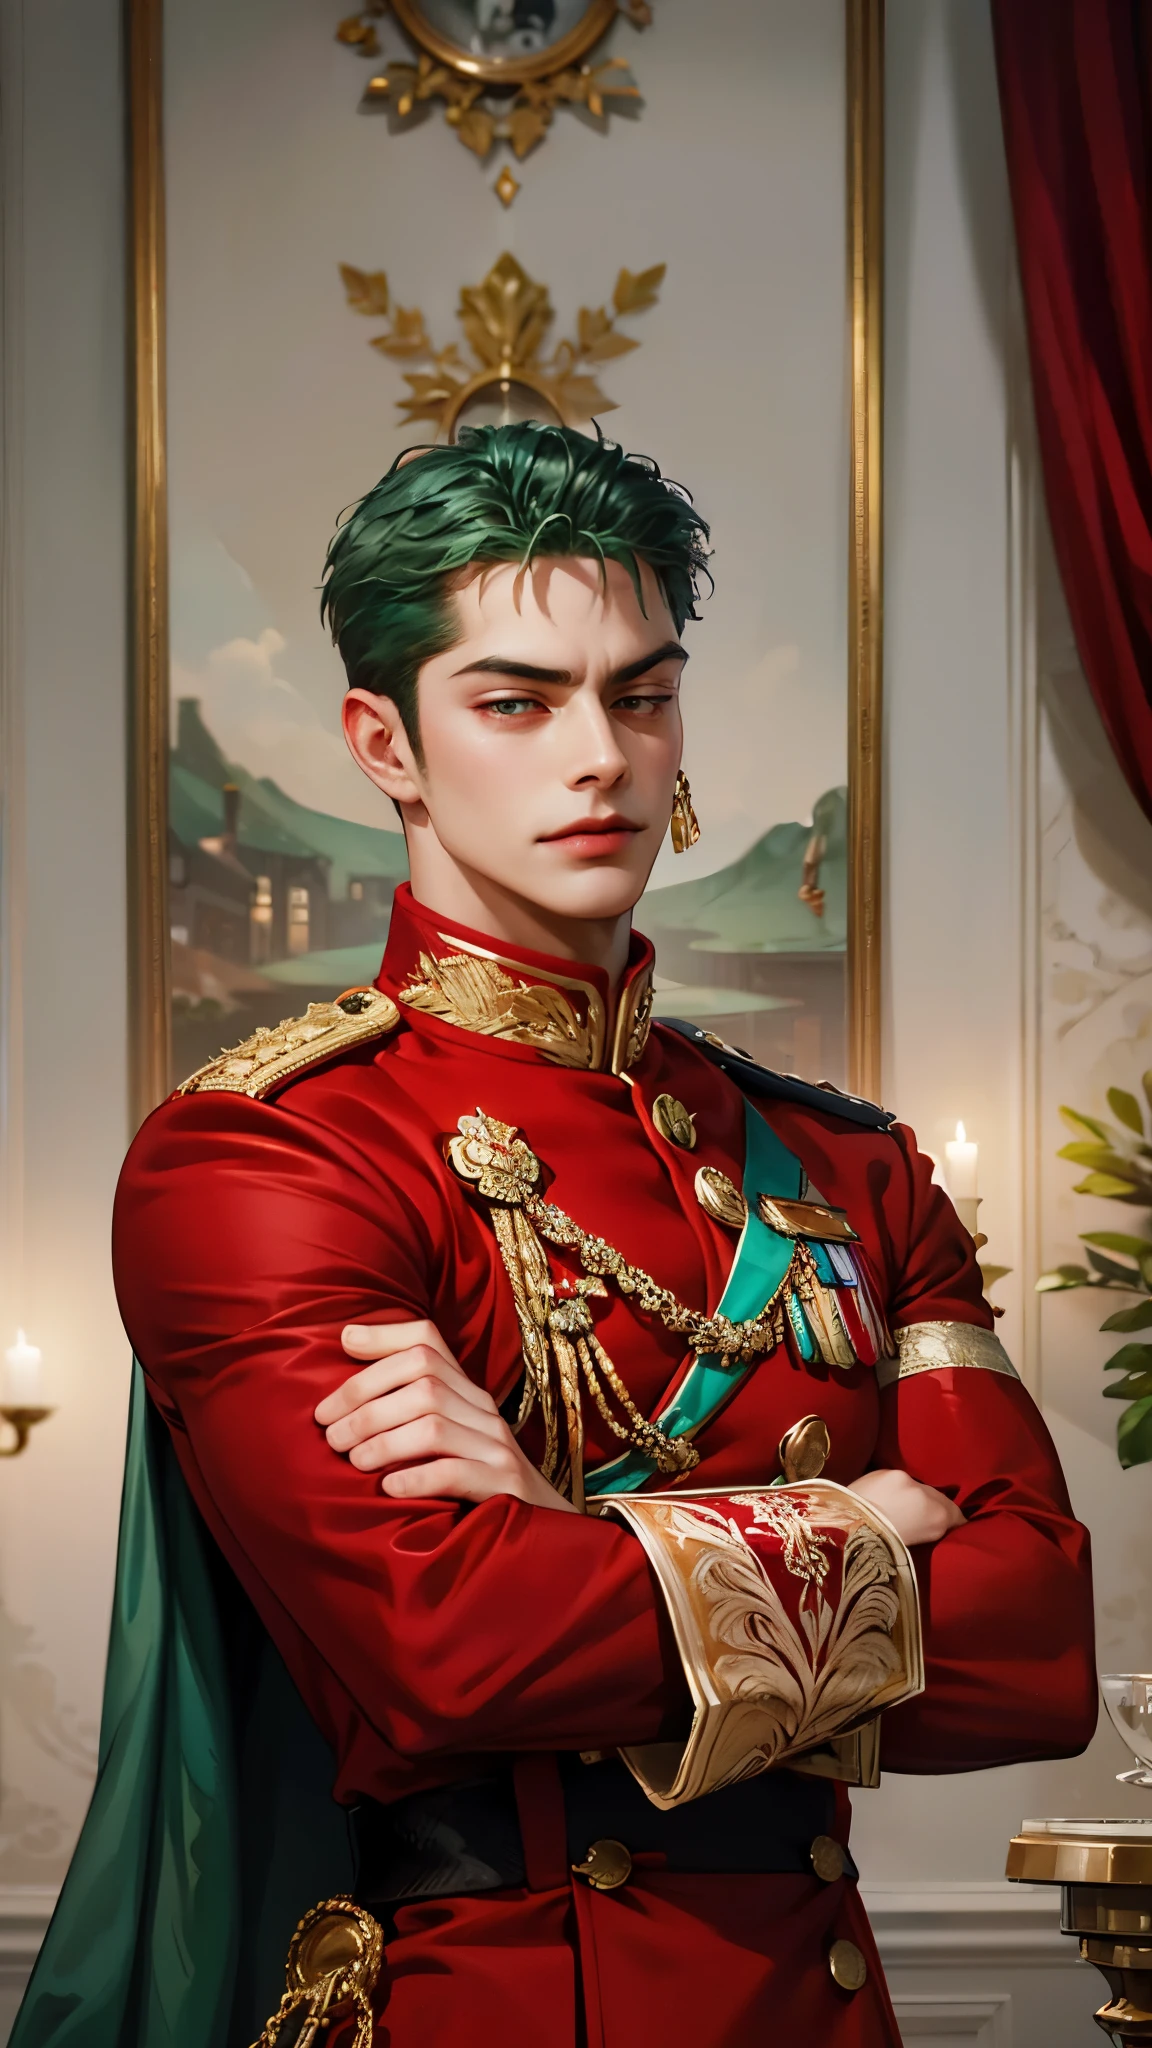 멋있는, 1명, 홀로, 빨간 군복, 빨간 유니폼, 왕실 근위, red 왕실 근위, 그을린 피부, 근육질의, 큰 근육, 능글맞게 웃다, 녹색 머리카락, 팔짱을 끼다